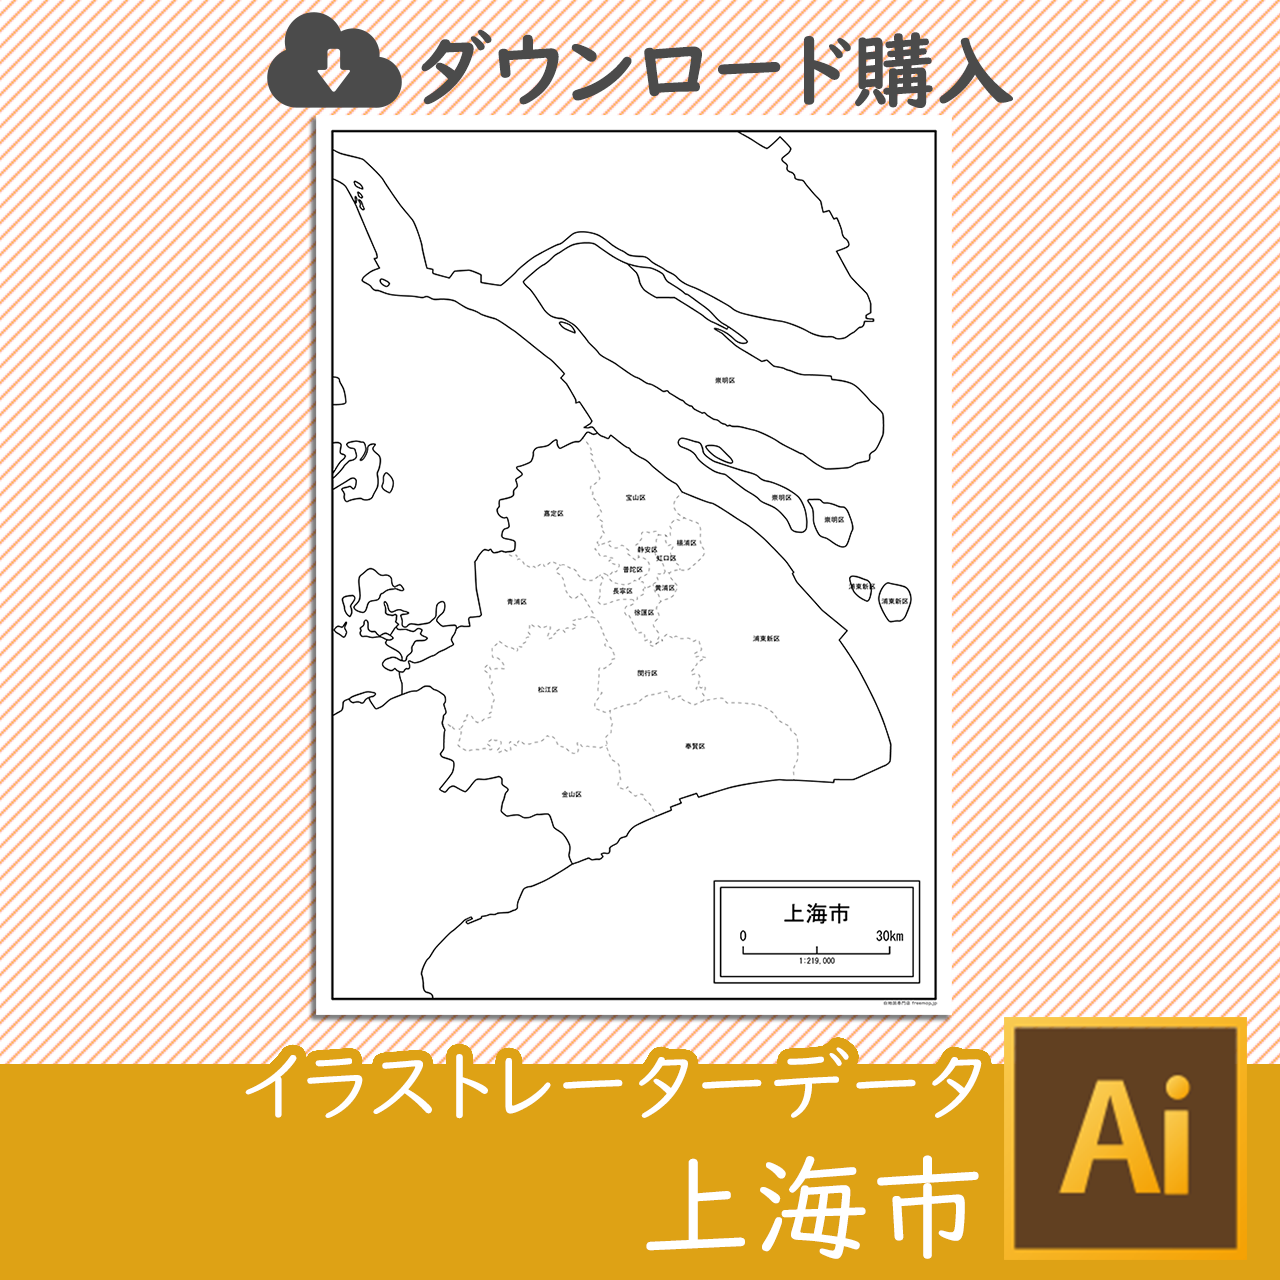 上海市の白地図データのサムネイル画像